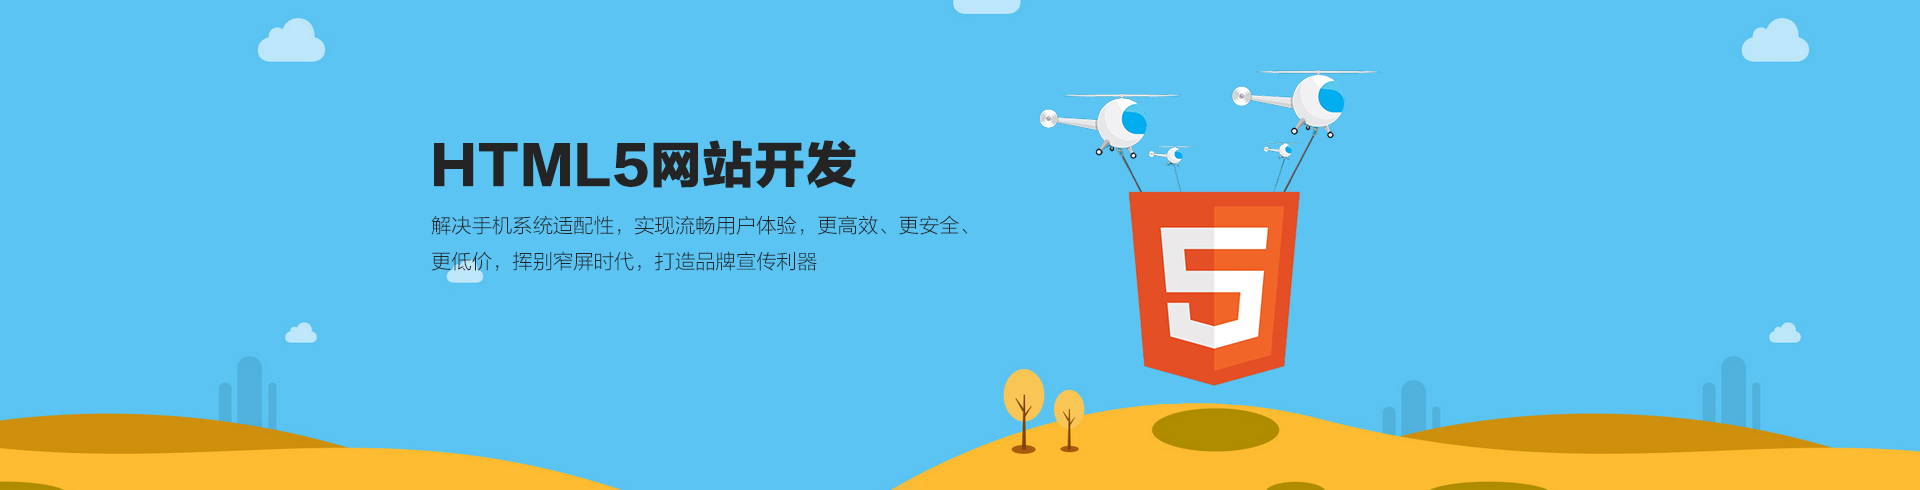 html5手机网站开发,H5开发,手机H5开发,广州H5开发,H5网站开发,广州软件开发公司